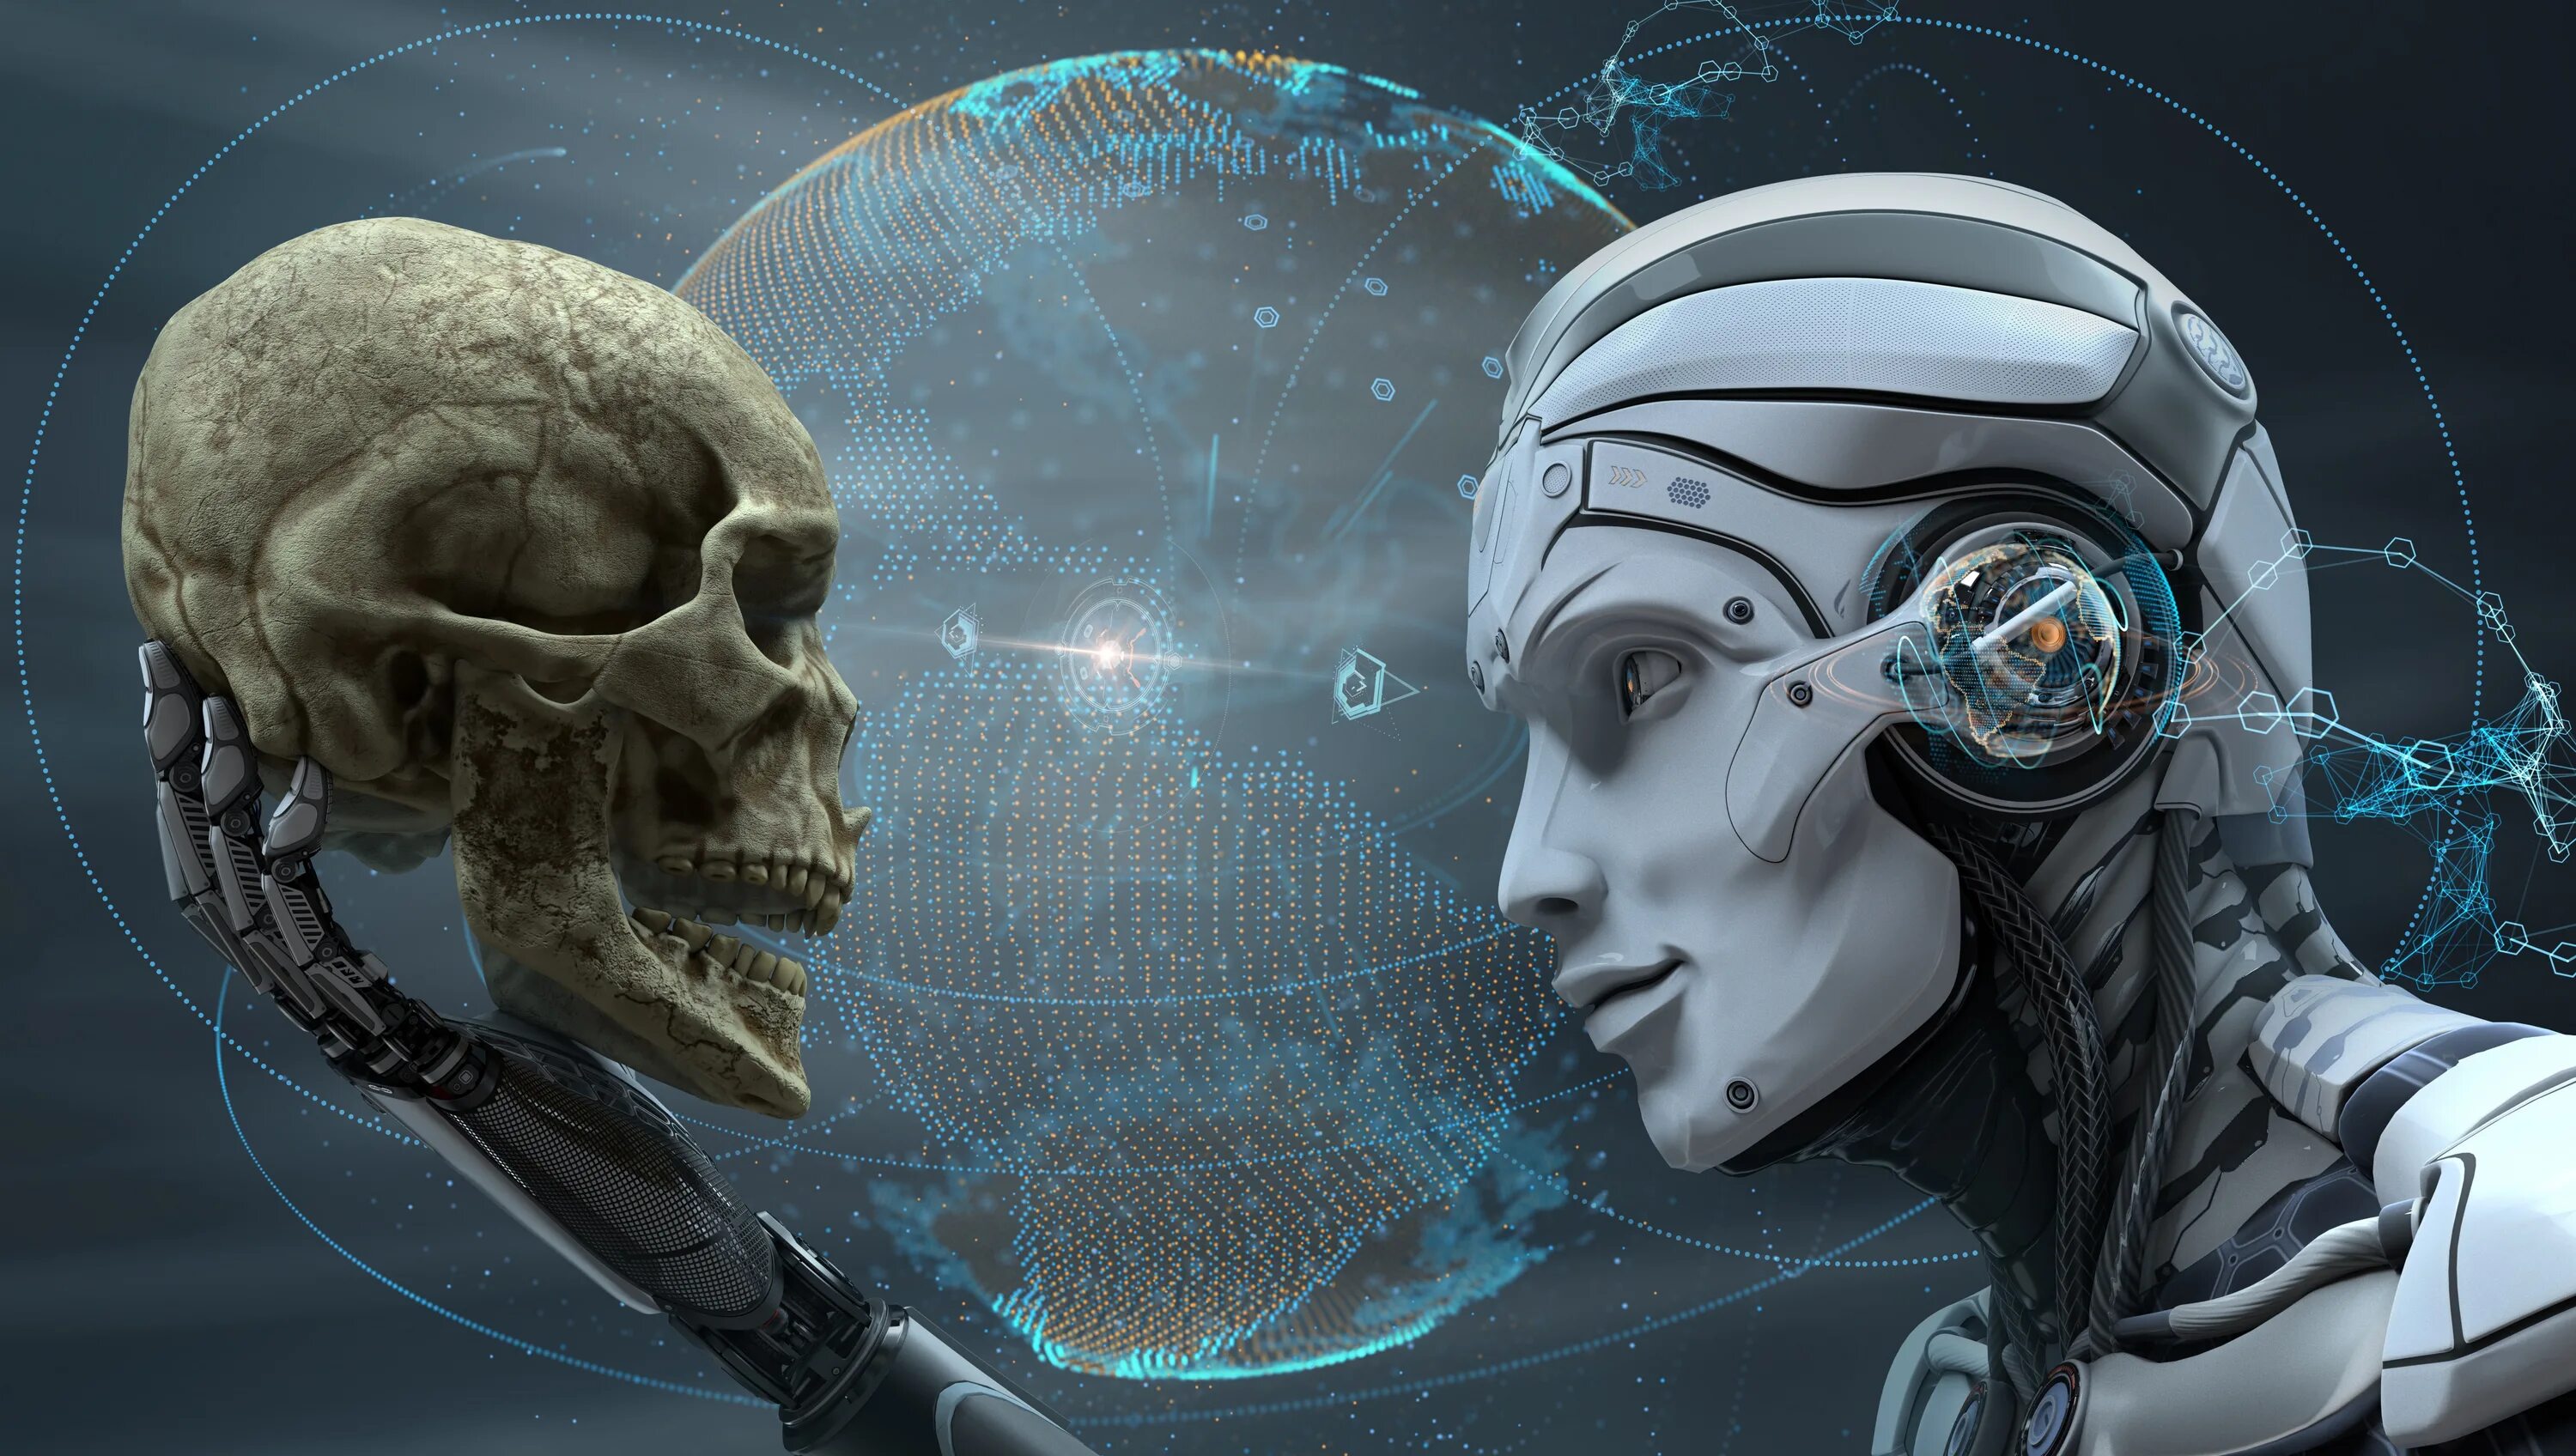 Future android. Айзек Азимов искусственный интеллект. Айзек Азимов сны роботов. Биологический робот. Кибернетический разум.